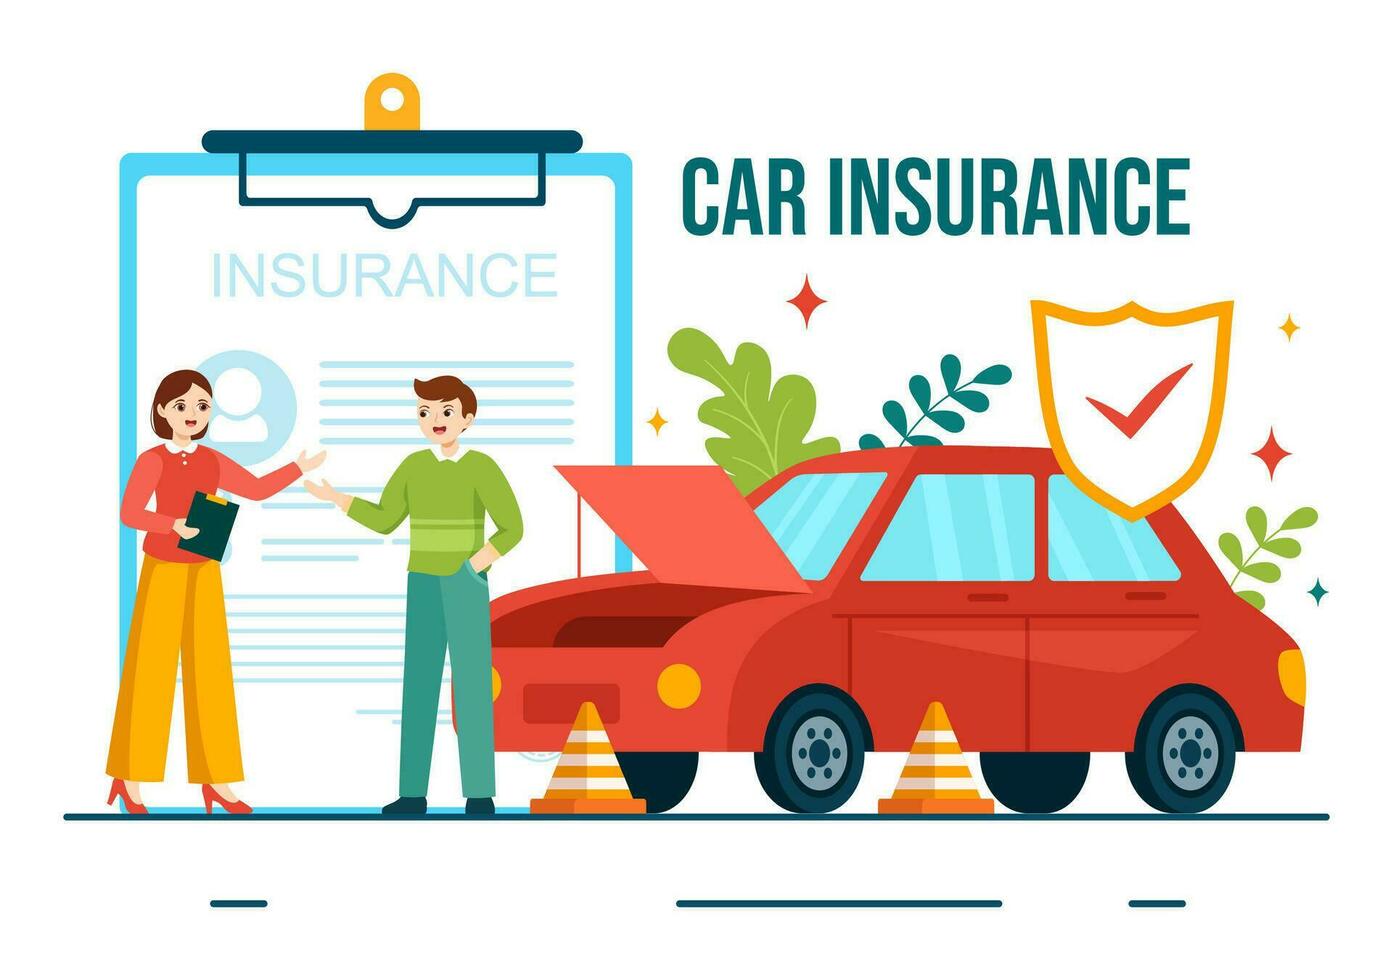 auto verzekering vector illustratie voor bescherming voor voertuig schade en noodgeval risico's met het formulier document en auto's in vlak tekenfilm achtergrond